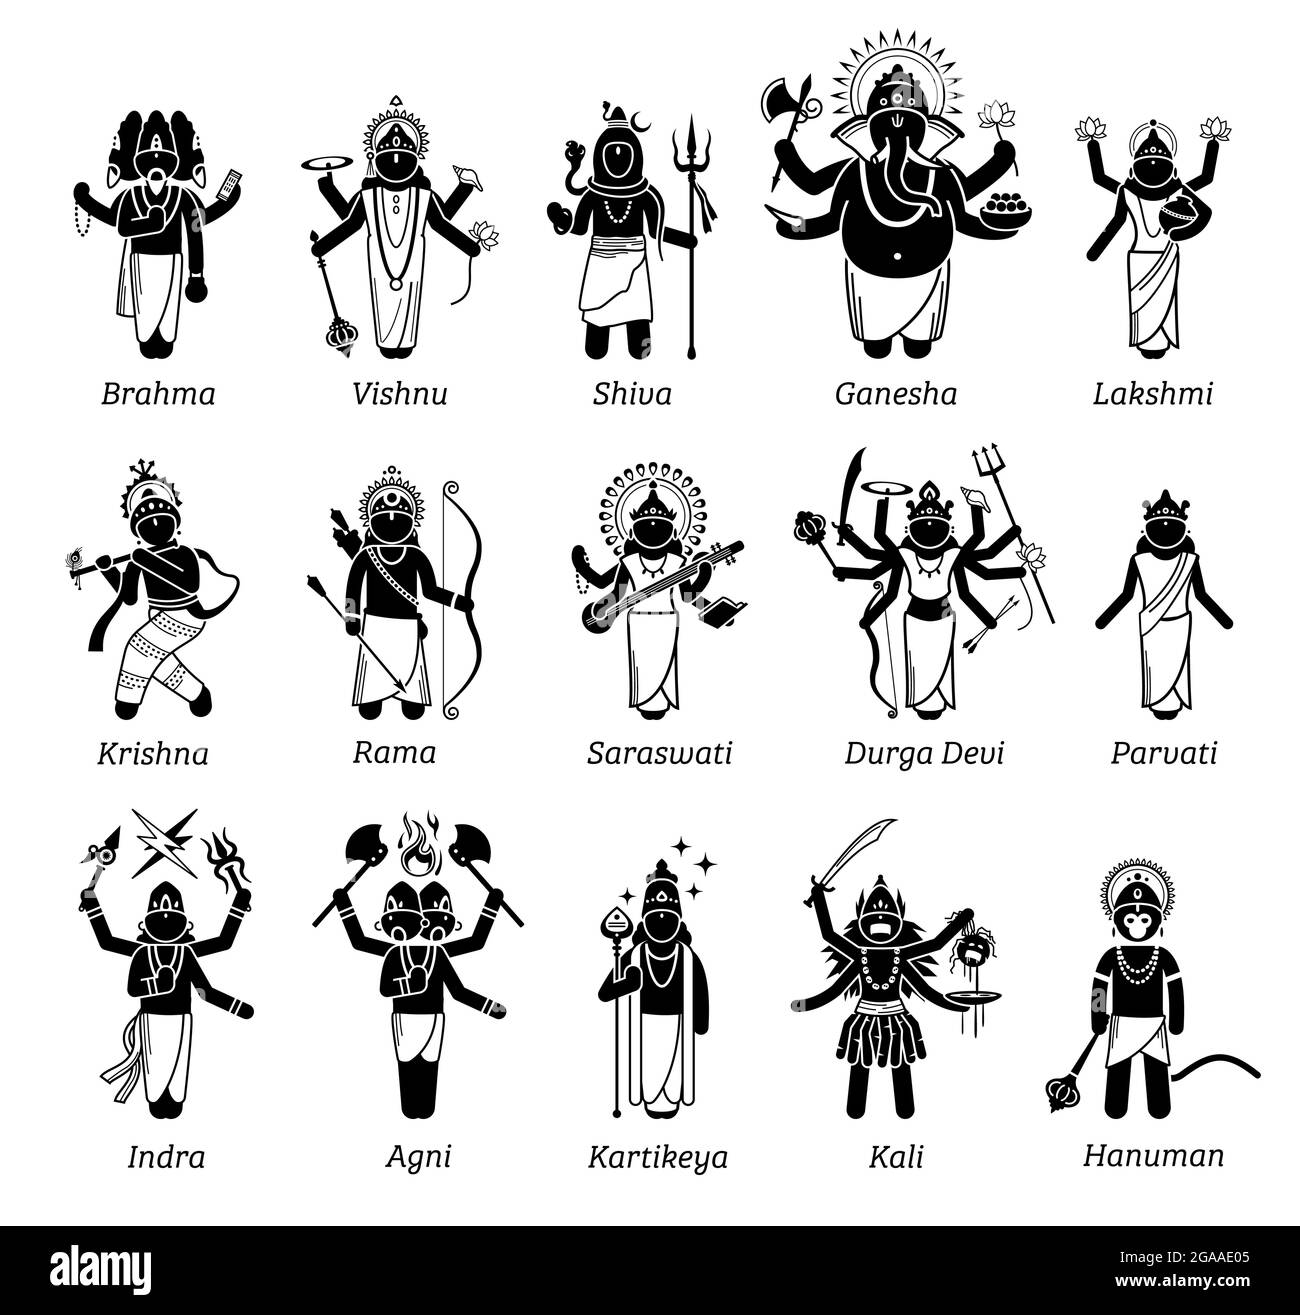 Les dieux hindous, la déesse et les déités dans les icônes de figure de bâton. Illustrations vectorielles des divinités hindoues populaires Brahma, Vishnu, Shiva, Genesha, Lakshmi, Krishna Illustration de Vecteur